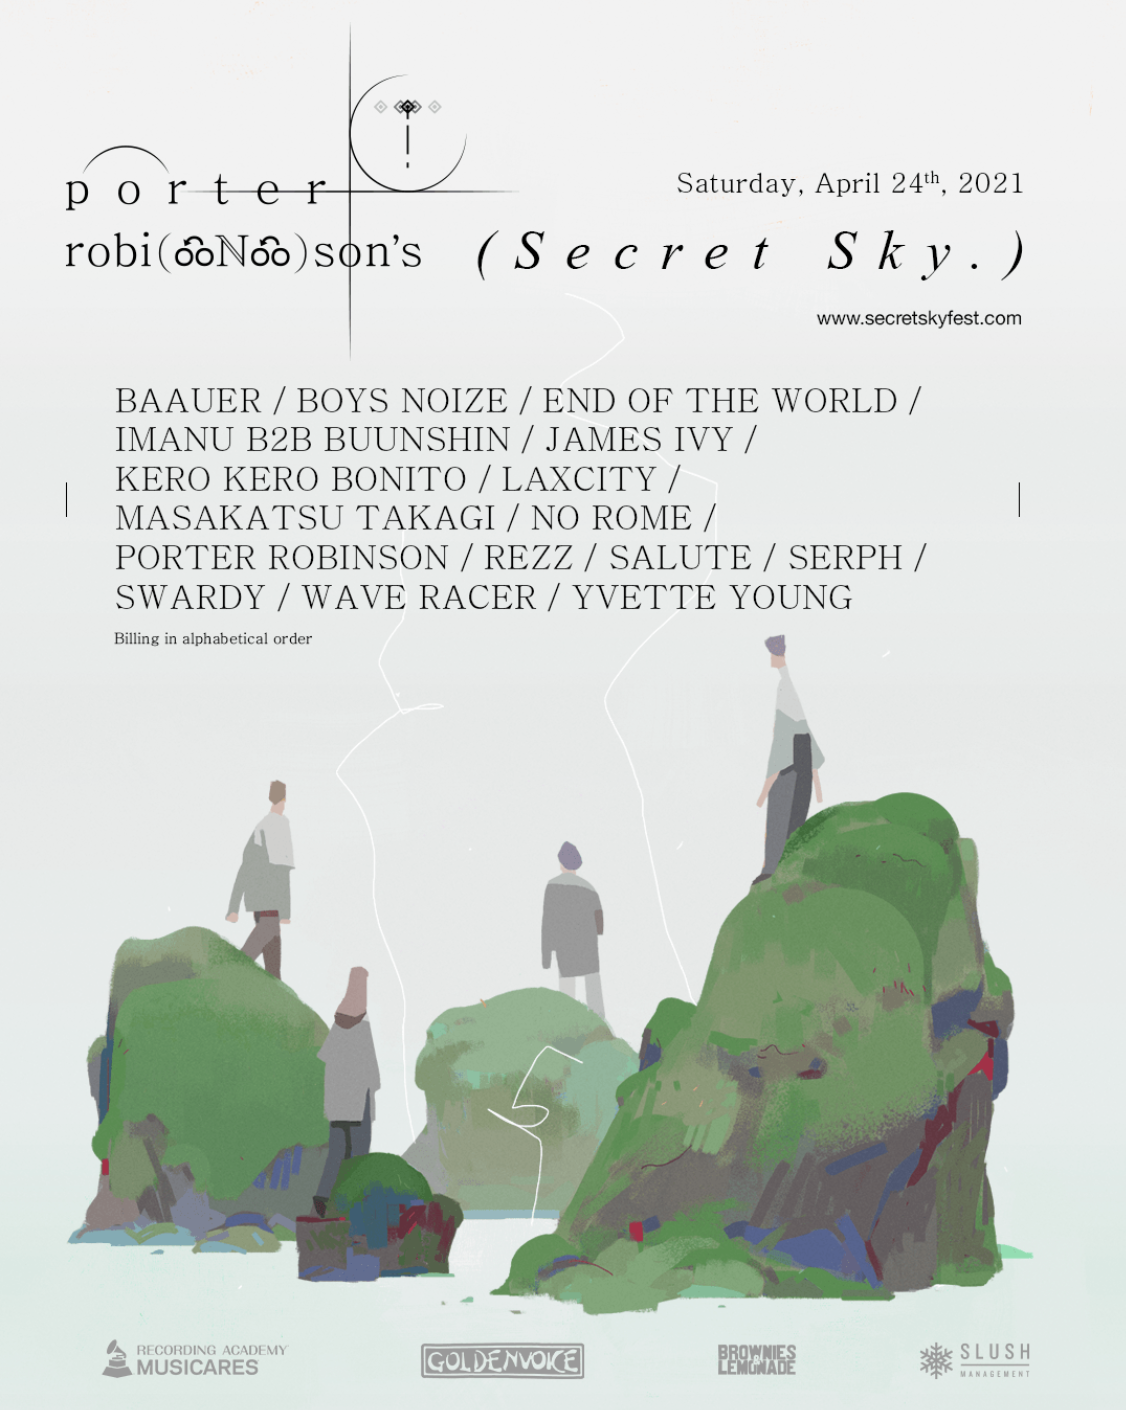 Full Artist Lineup for Porter Robinson’s Secret Sky Revealed